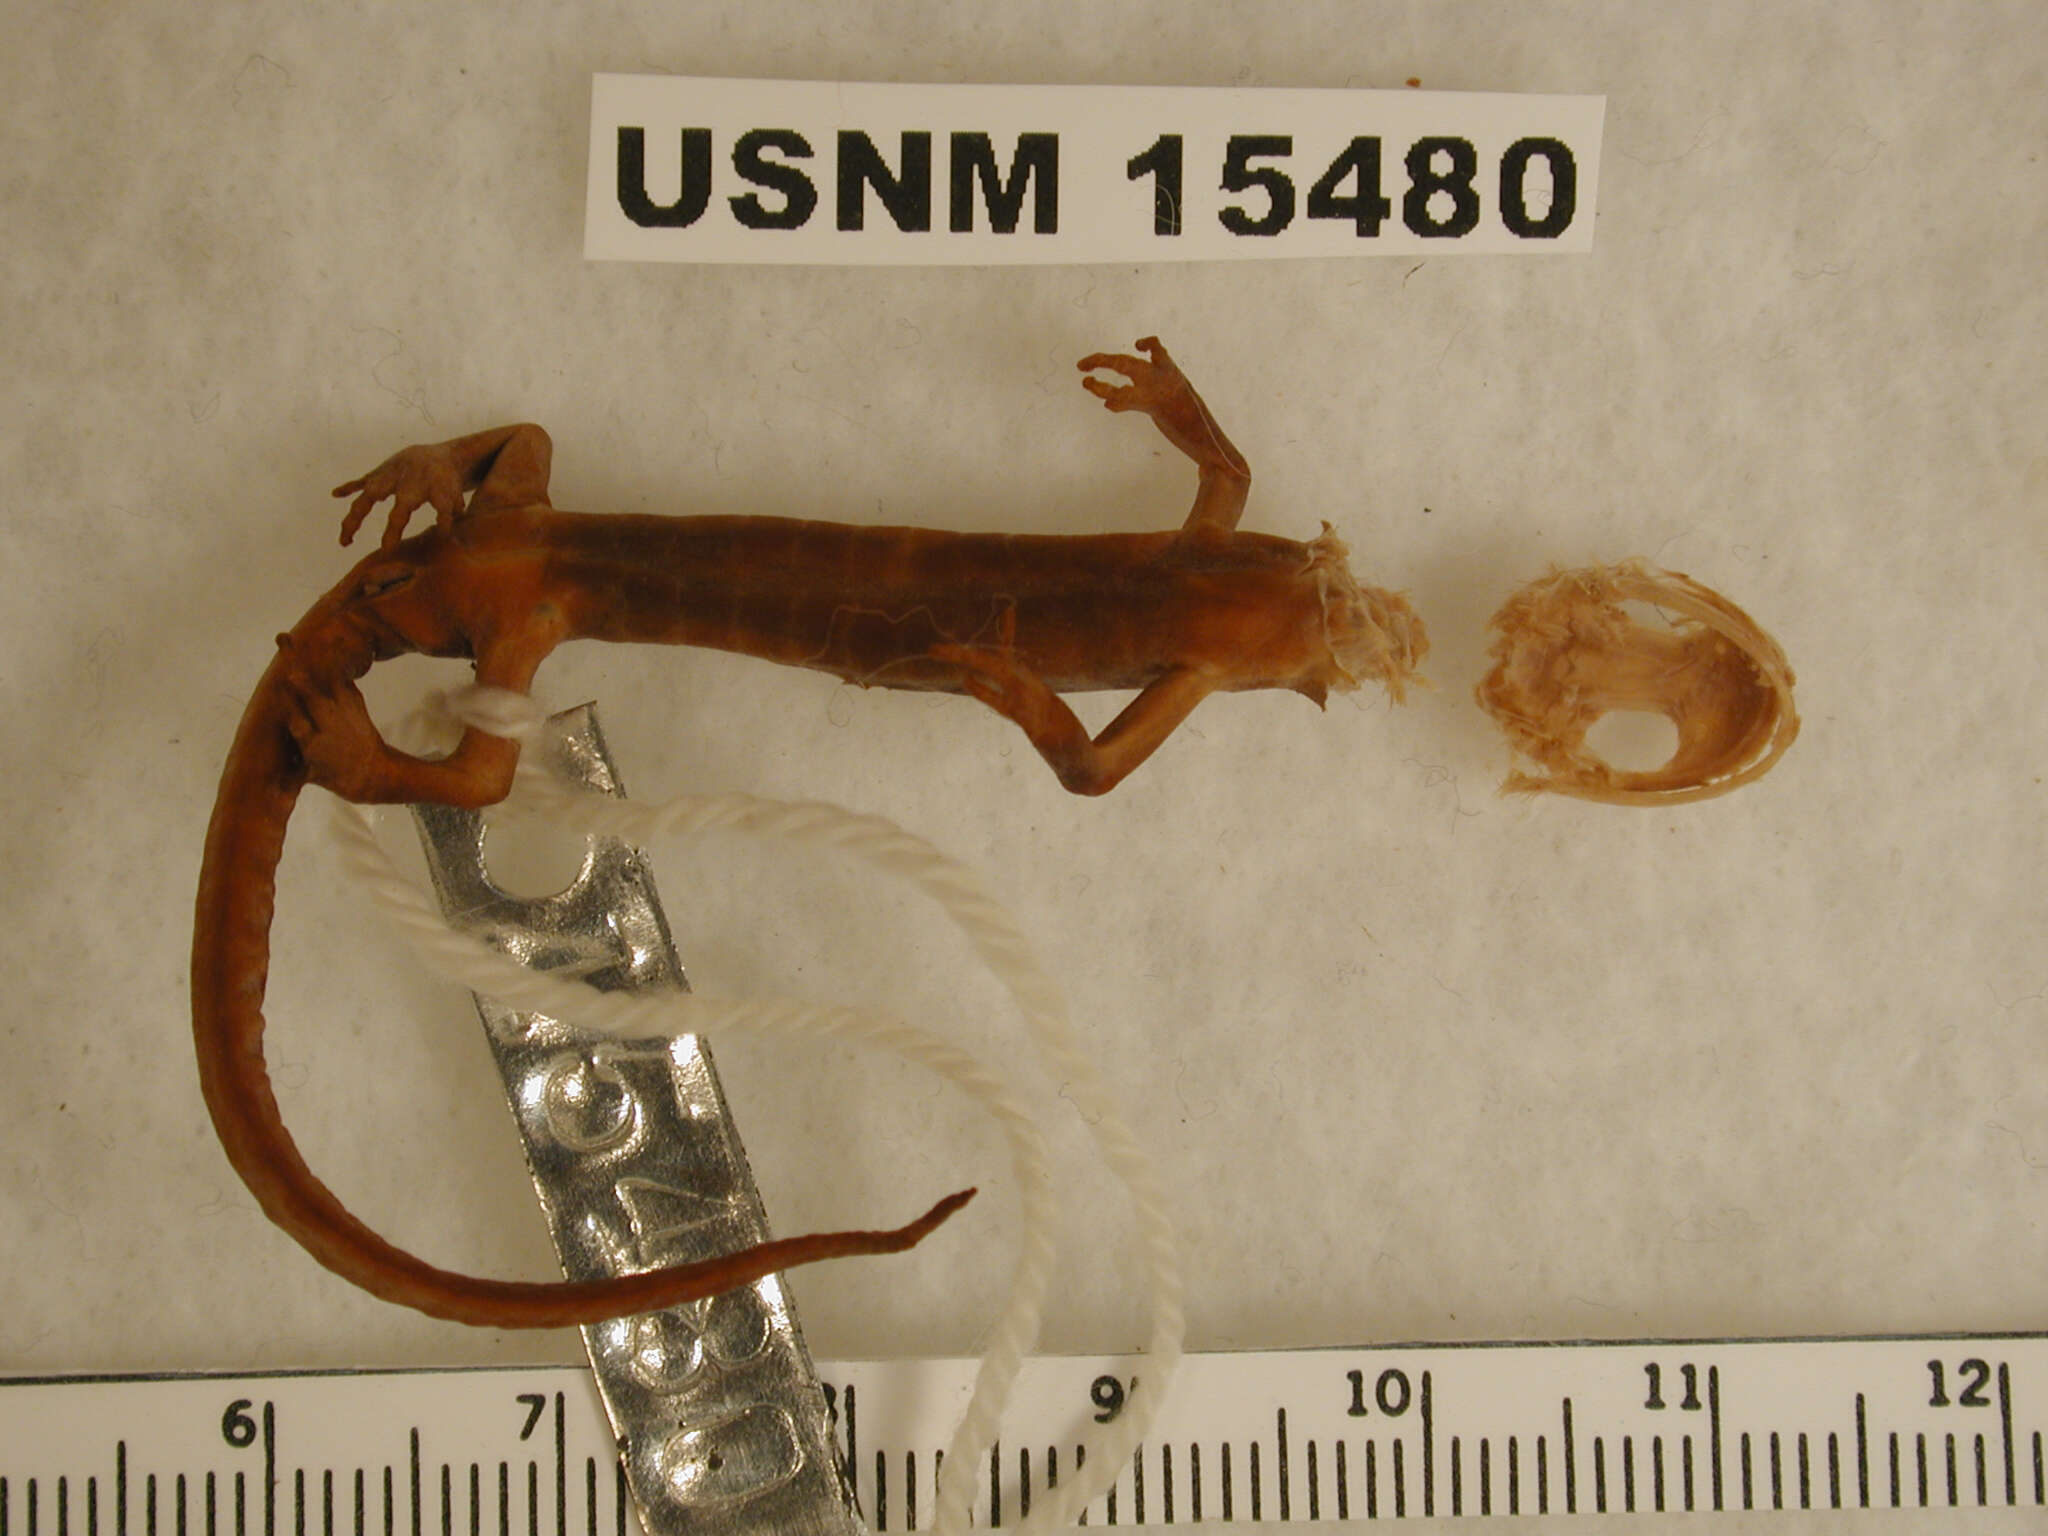 Image of salamanders